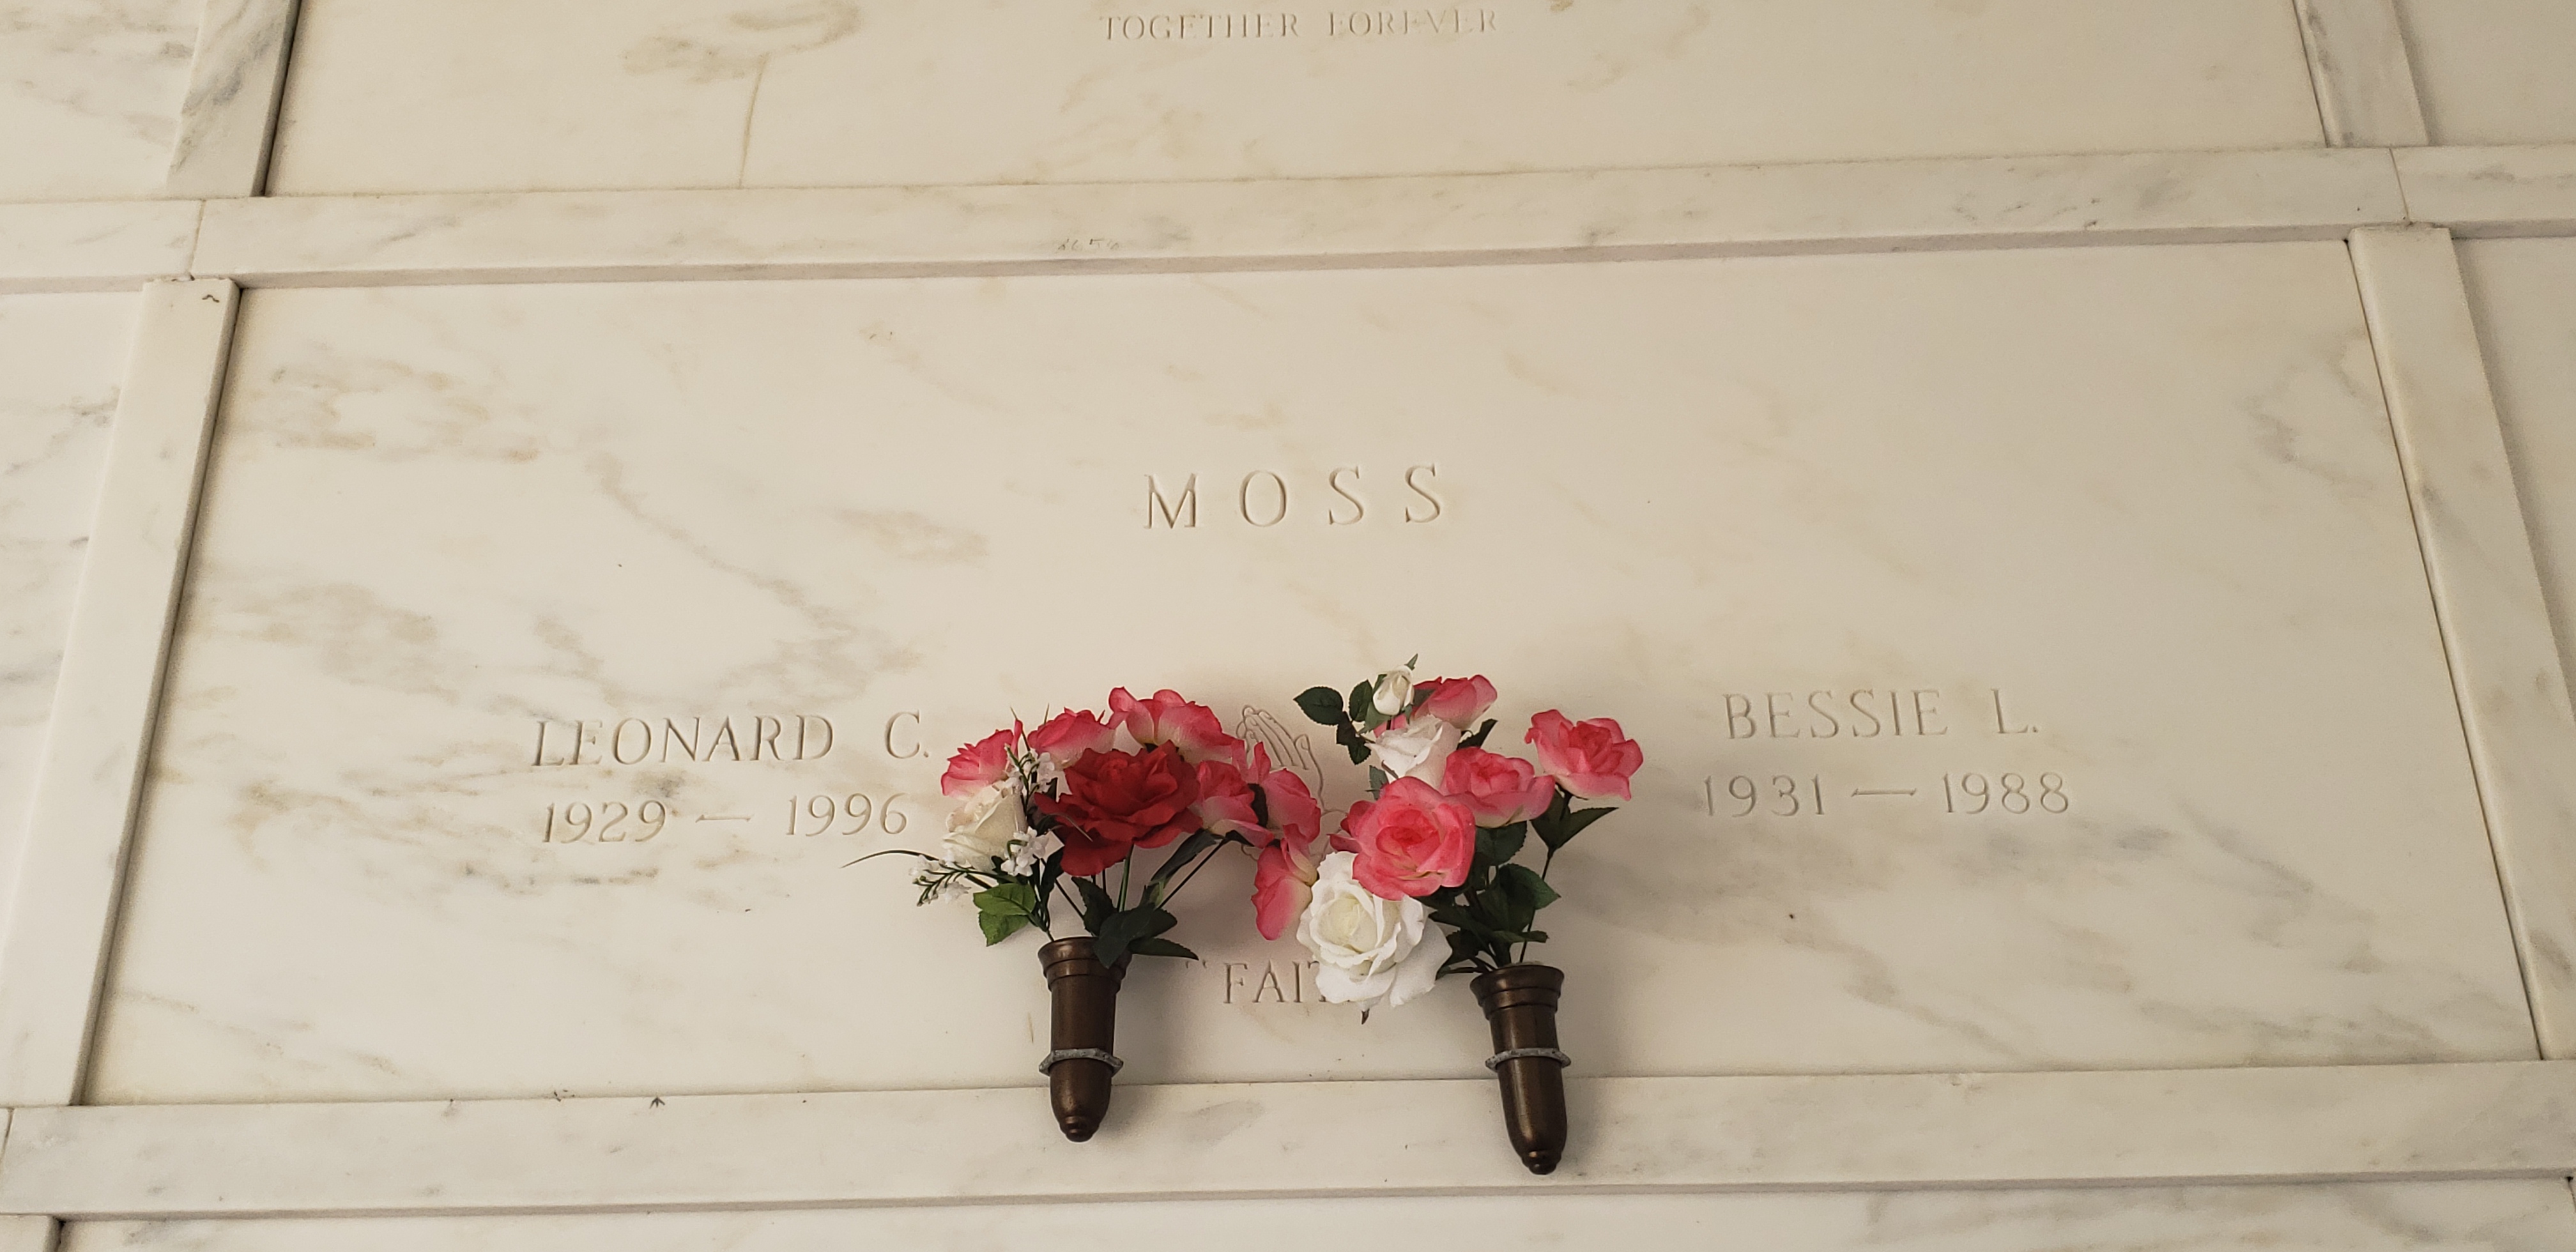 Bessie L Moss